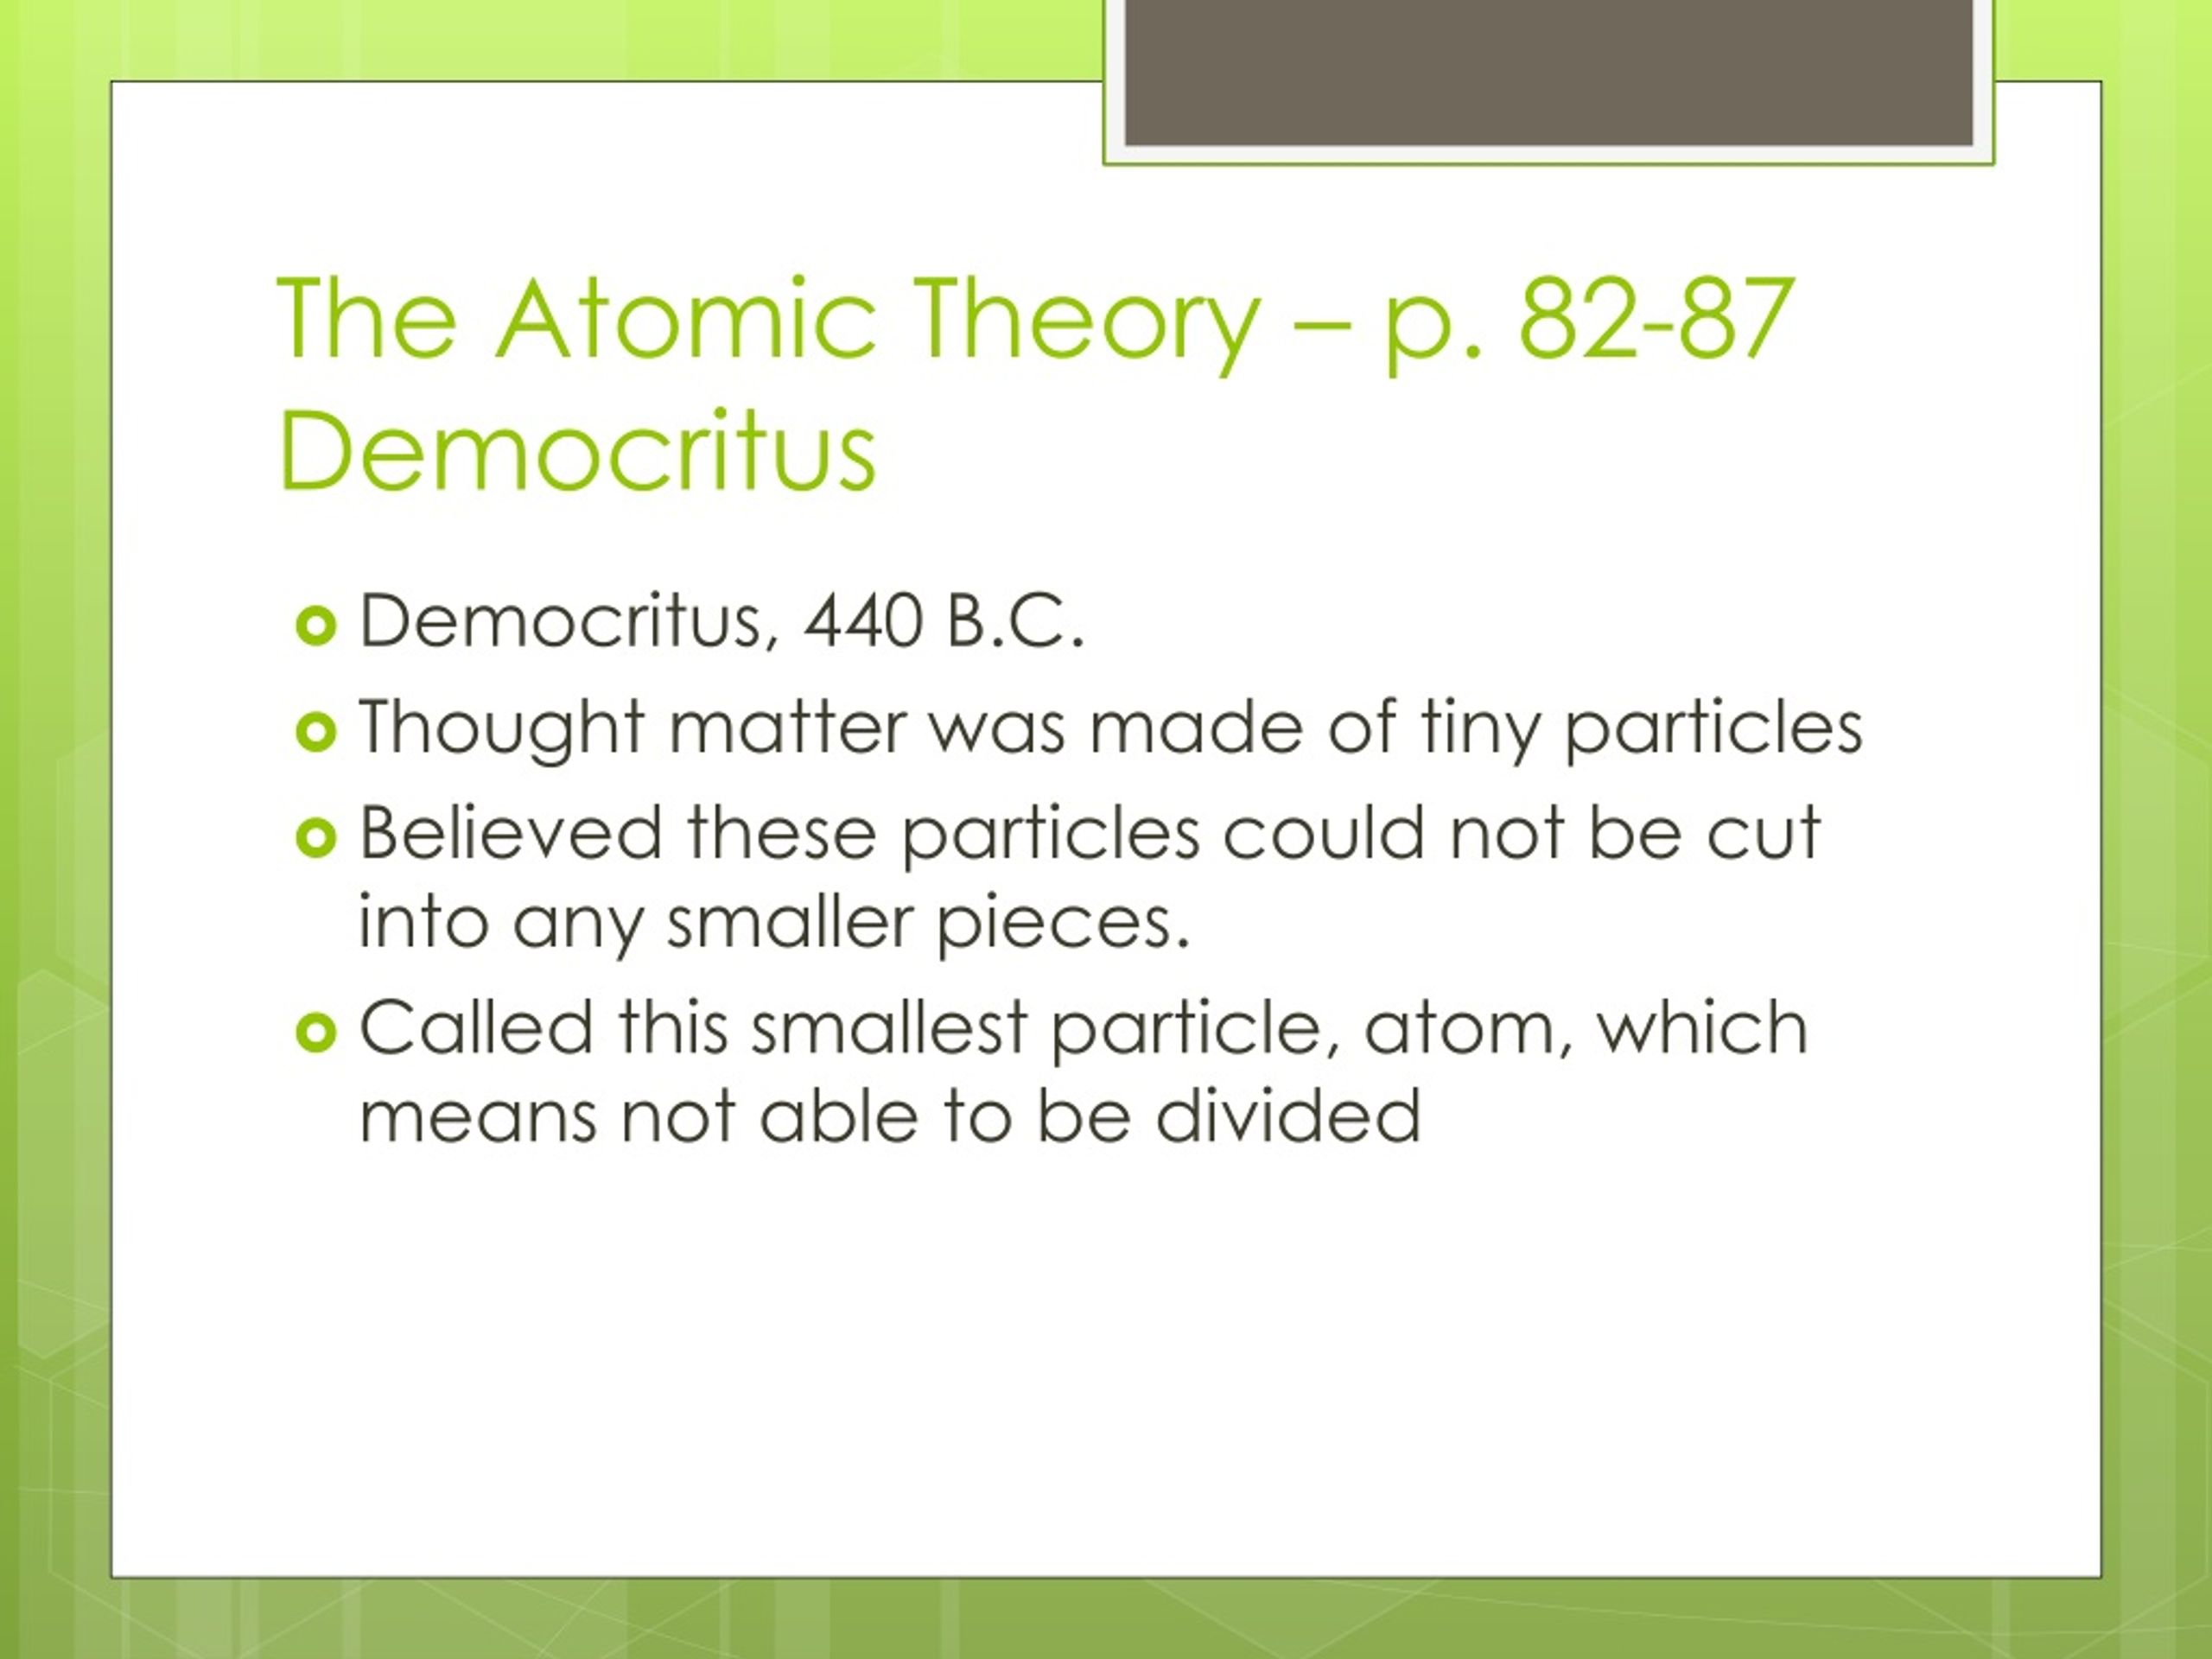 democritus contribution to atomic theory